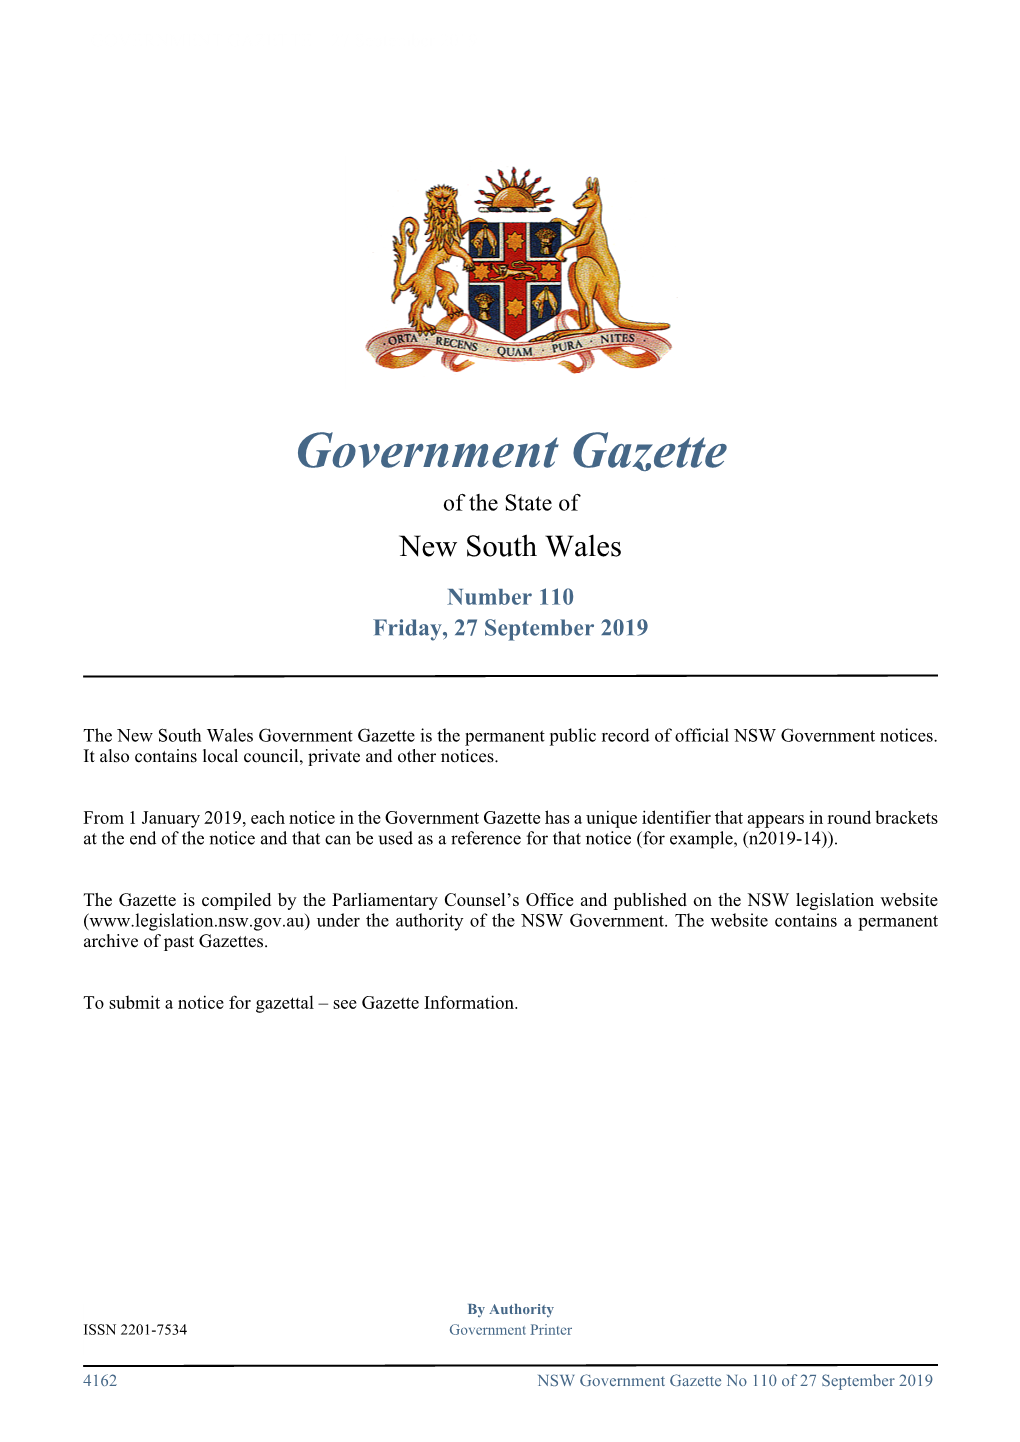 Government Gazette No 110 of Friday 27 September 2019